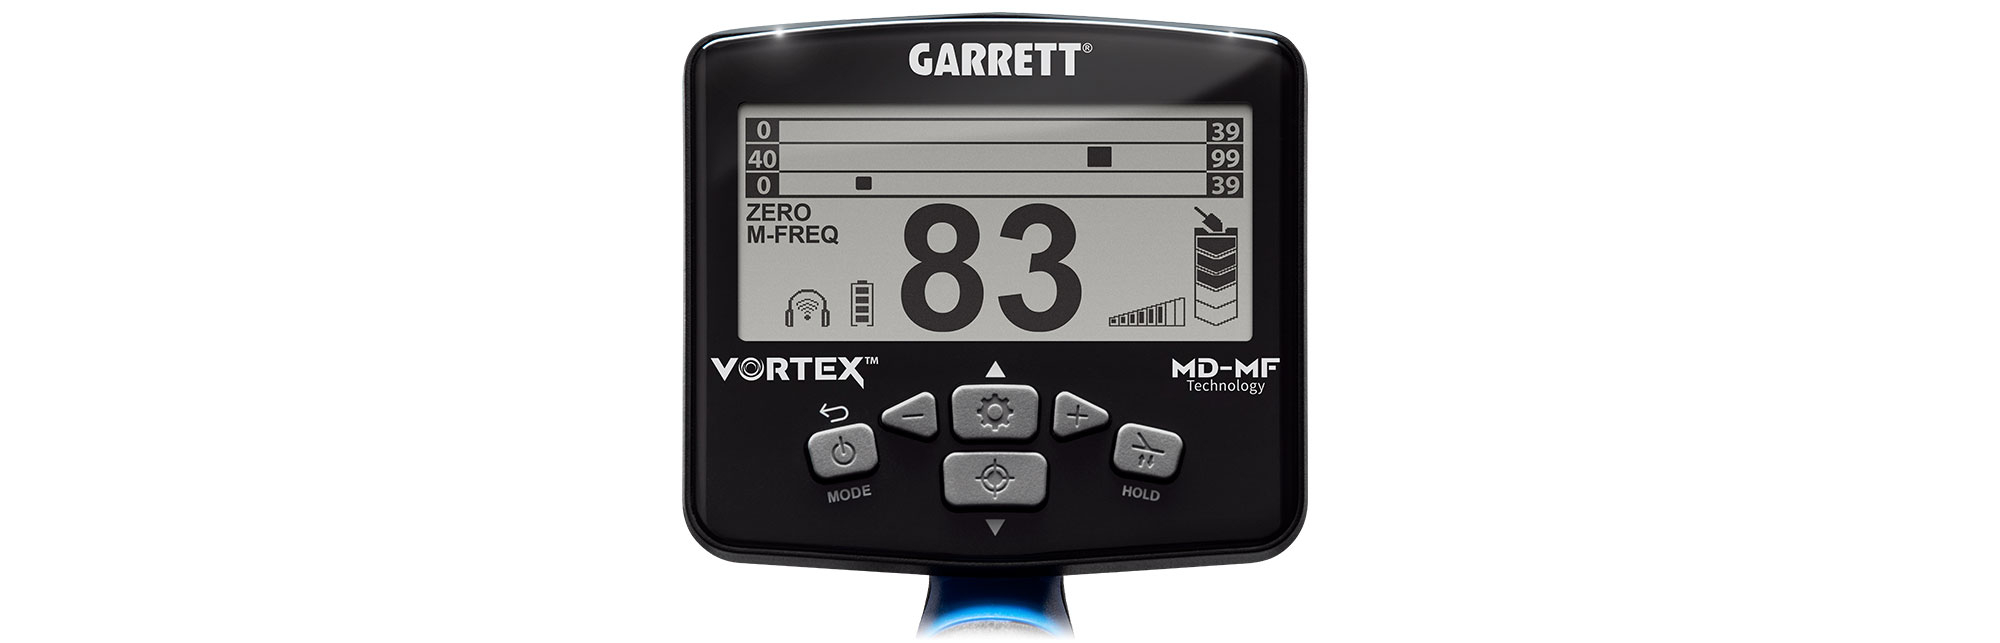 Garrett Vortex VX9 control panel